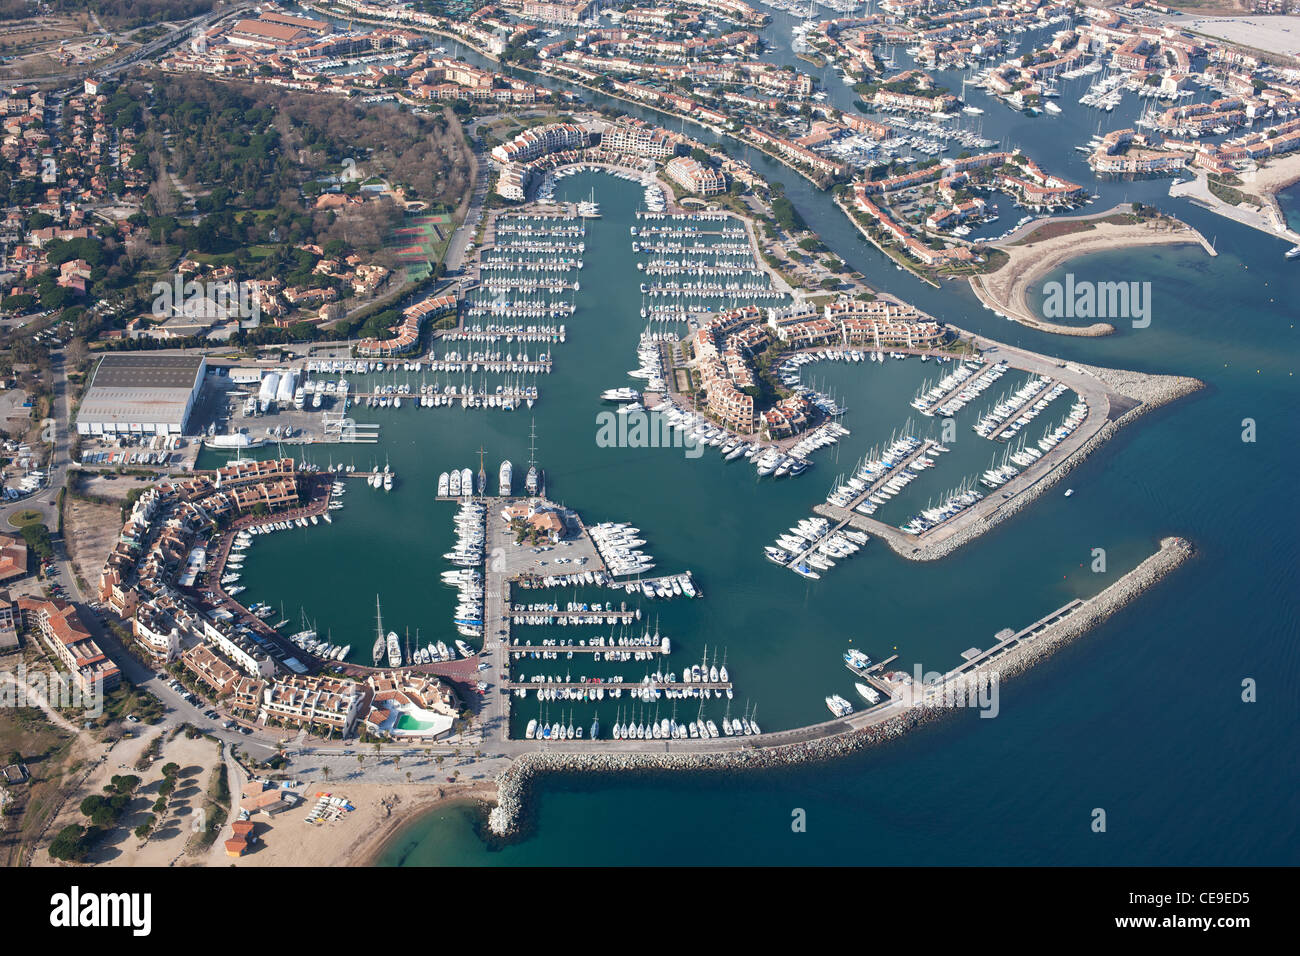 VUE AÉRIENNE.Les Marines de Cogolin et Port Grimaud en haut à droite.Golfe de Saint-Tropez.Var, Côte d'Azur, France. Banque D'Images